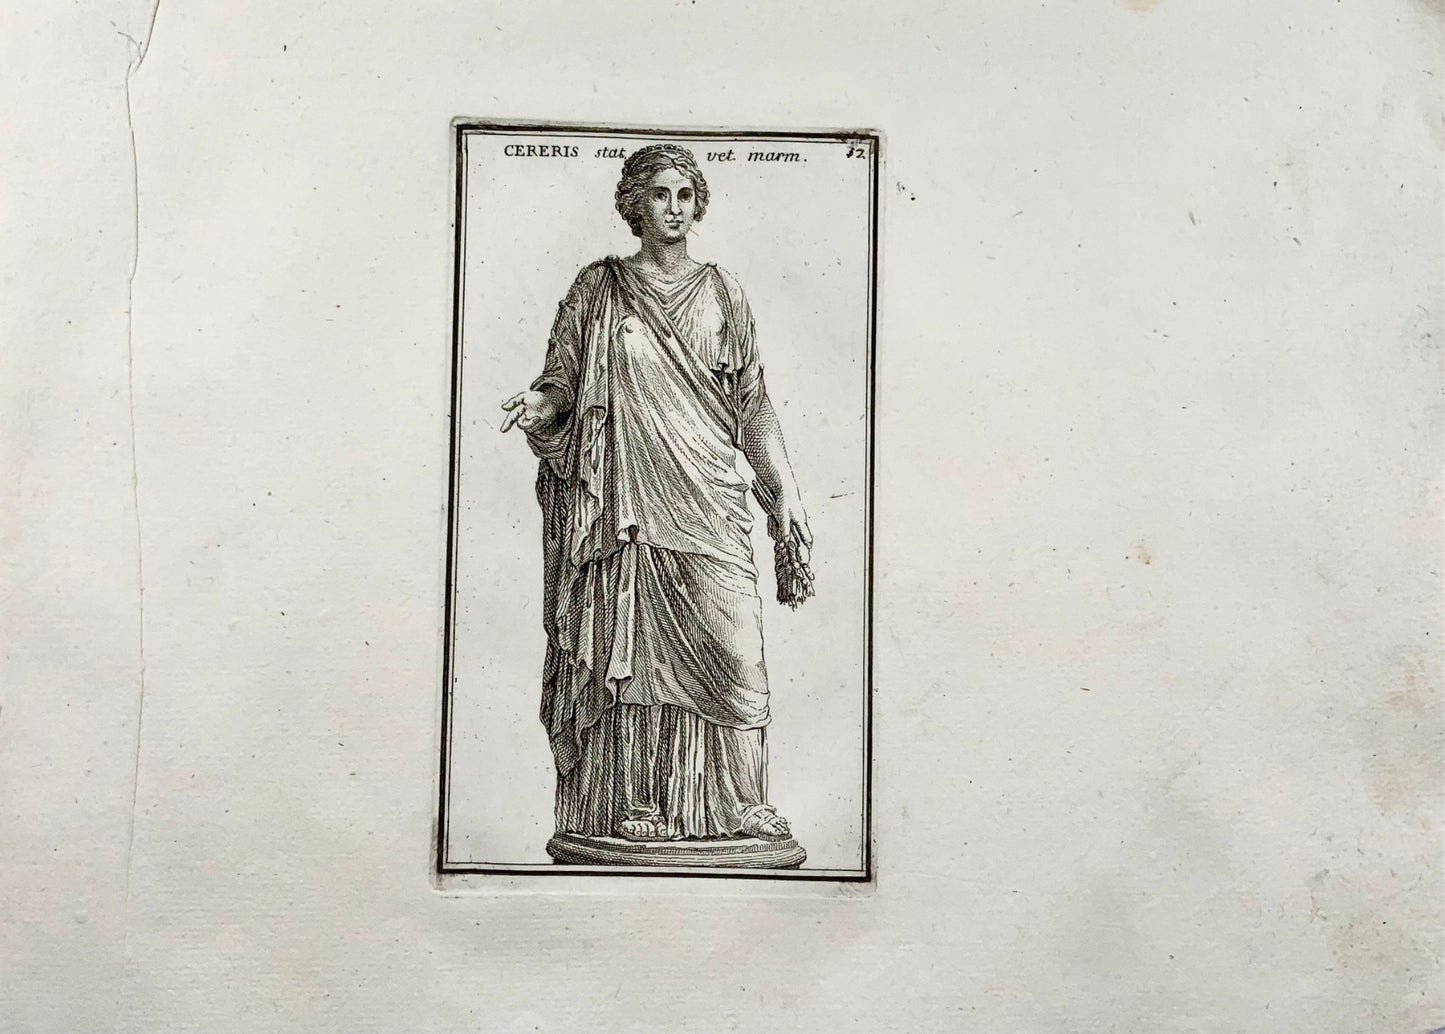 1779 Statua di Cerere, dio dell'agricoltura, incisione, "Calcografia di Roma"